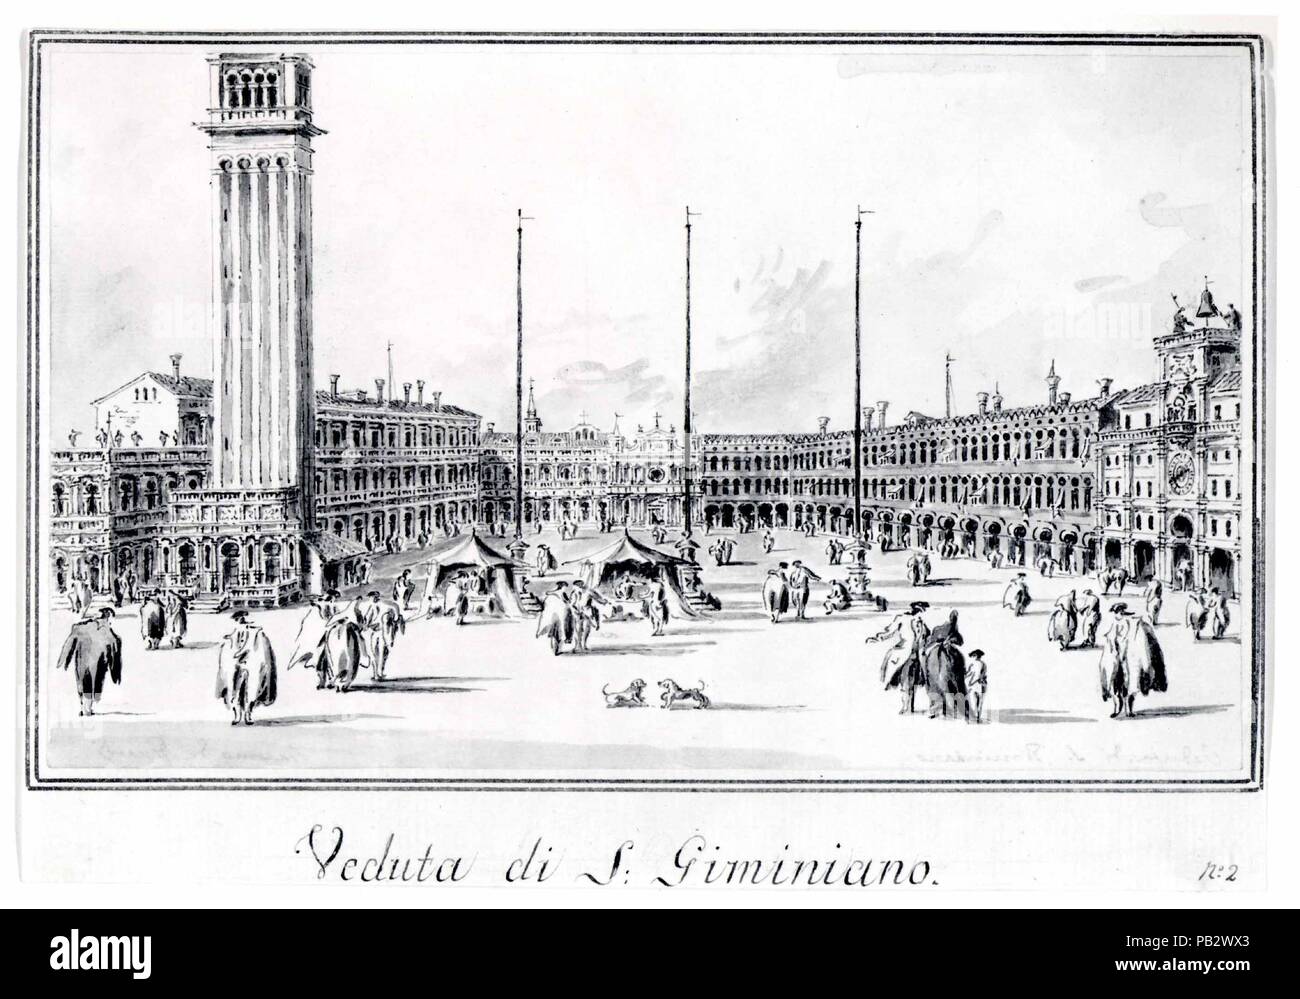 La Piazza San Marco, mirando hacia la Iglesia de San Gemignano. Artista: Giacomo Guardi (Italiano, Venecia Venecia 1764-1835 (?) (?)). Dimensiones: 4 15/16 x 8 3/8 in. (12,6 x 21,2 cm). Fecha: ca. 1804-28. Este es uno de una serie de dibujos en lápiz y tinta y lavado de gris, que formó parte de un álbum vivienda cuarenta y ocho vistas de Venecia y las islas de los alrededores. Reconociendo el incentivo del mercado para producir dibujos bastante prosaico como recuerdos para turistas, Giacomo hicieron muchos de esos álbumes, repitiendo las composiciones según sea necesario. La vista de la plaza de San Marcos, el cual comienza el nu Foto de stock